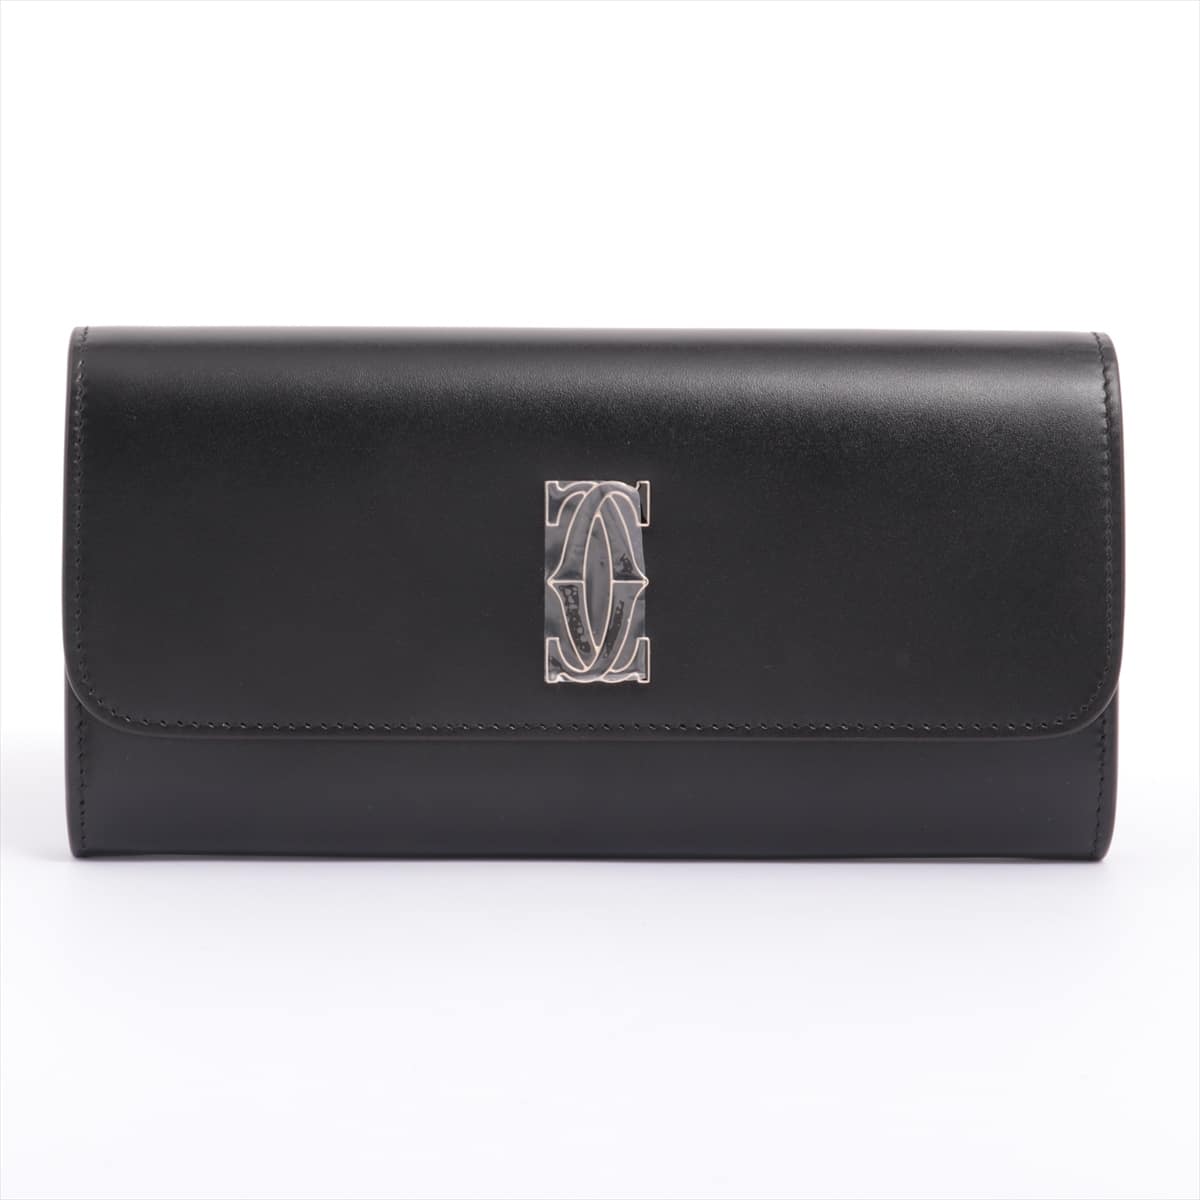 Cartier Logo Double C Leather Wallet Black